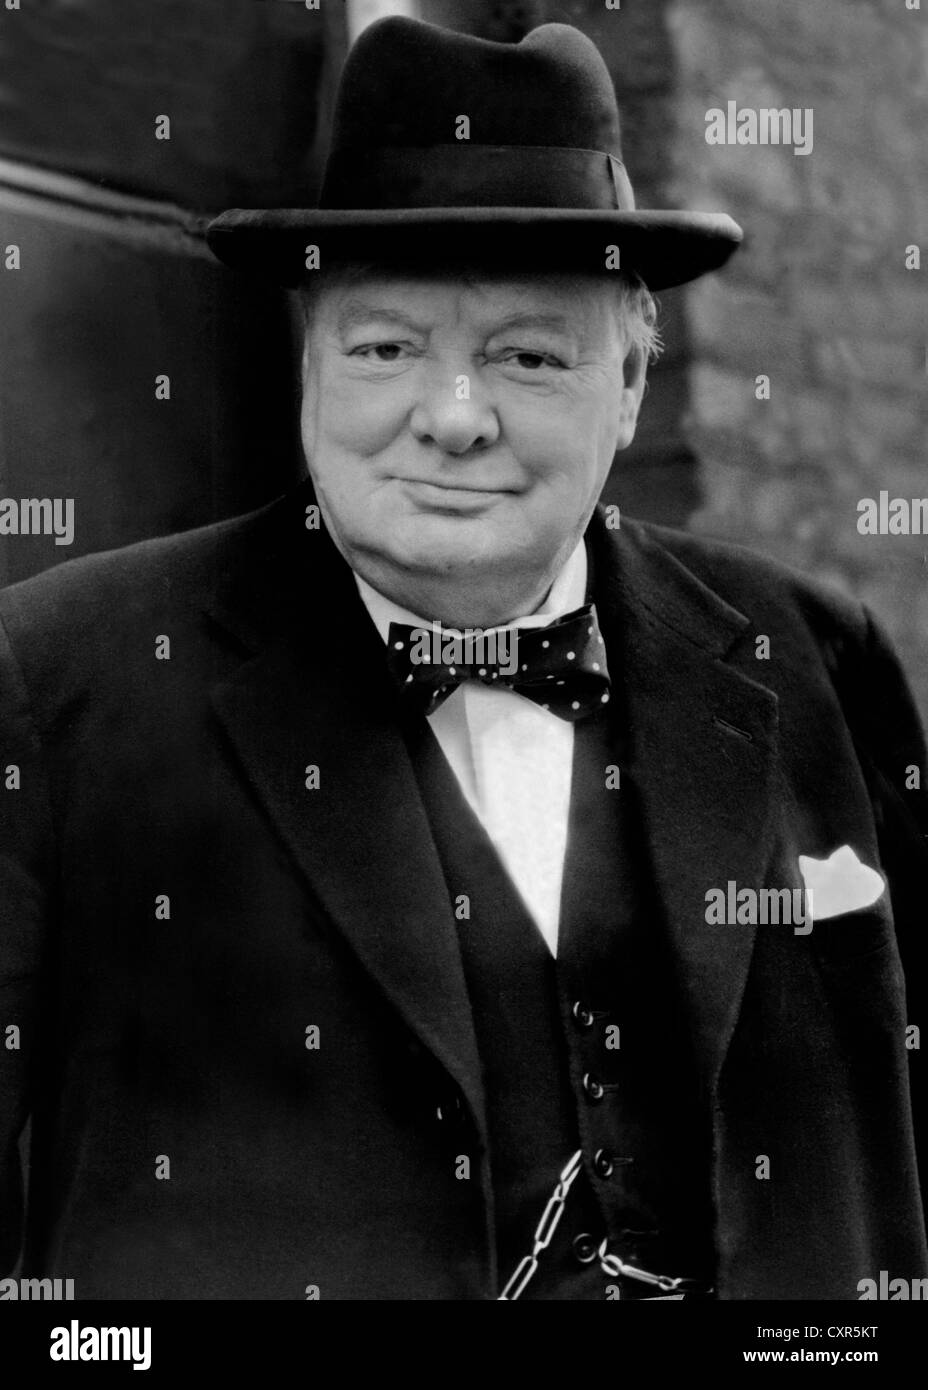 Sir Winston Churchill britischer Krieg Führer. 1940's Image. Aus den Archiven von Presse Portrait Service (ehemals Presse Portrait Bureau) Stockfoto